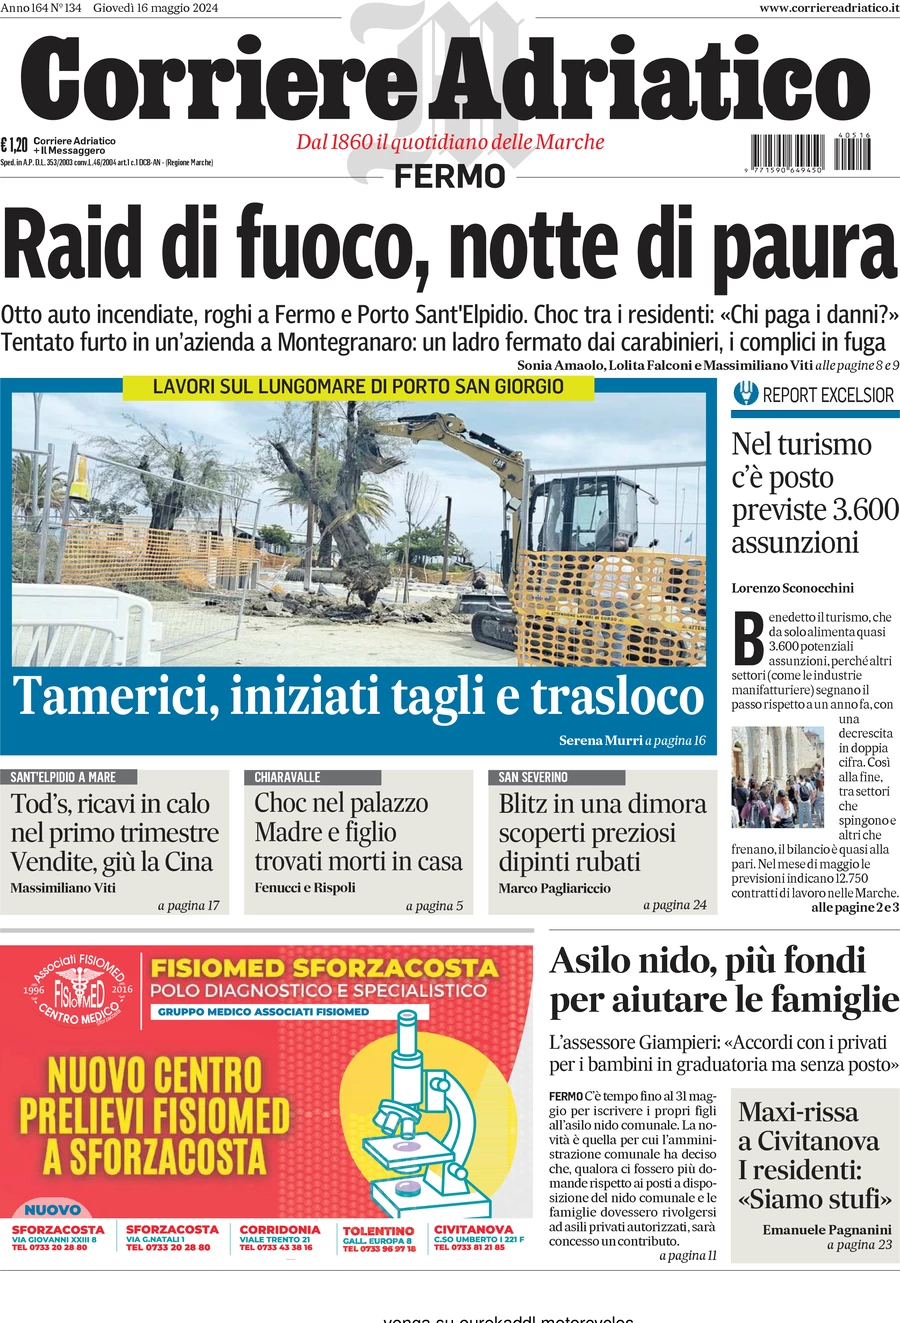 Anteprima prima pagina della rasegna stampa di ieri 2024-05-16 - corriere-adriatico-fermo/